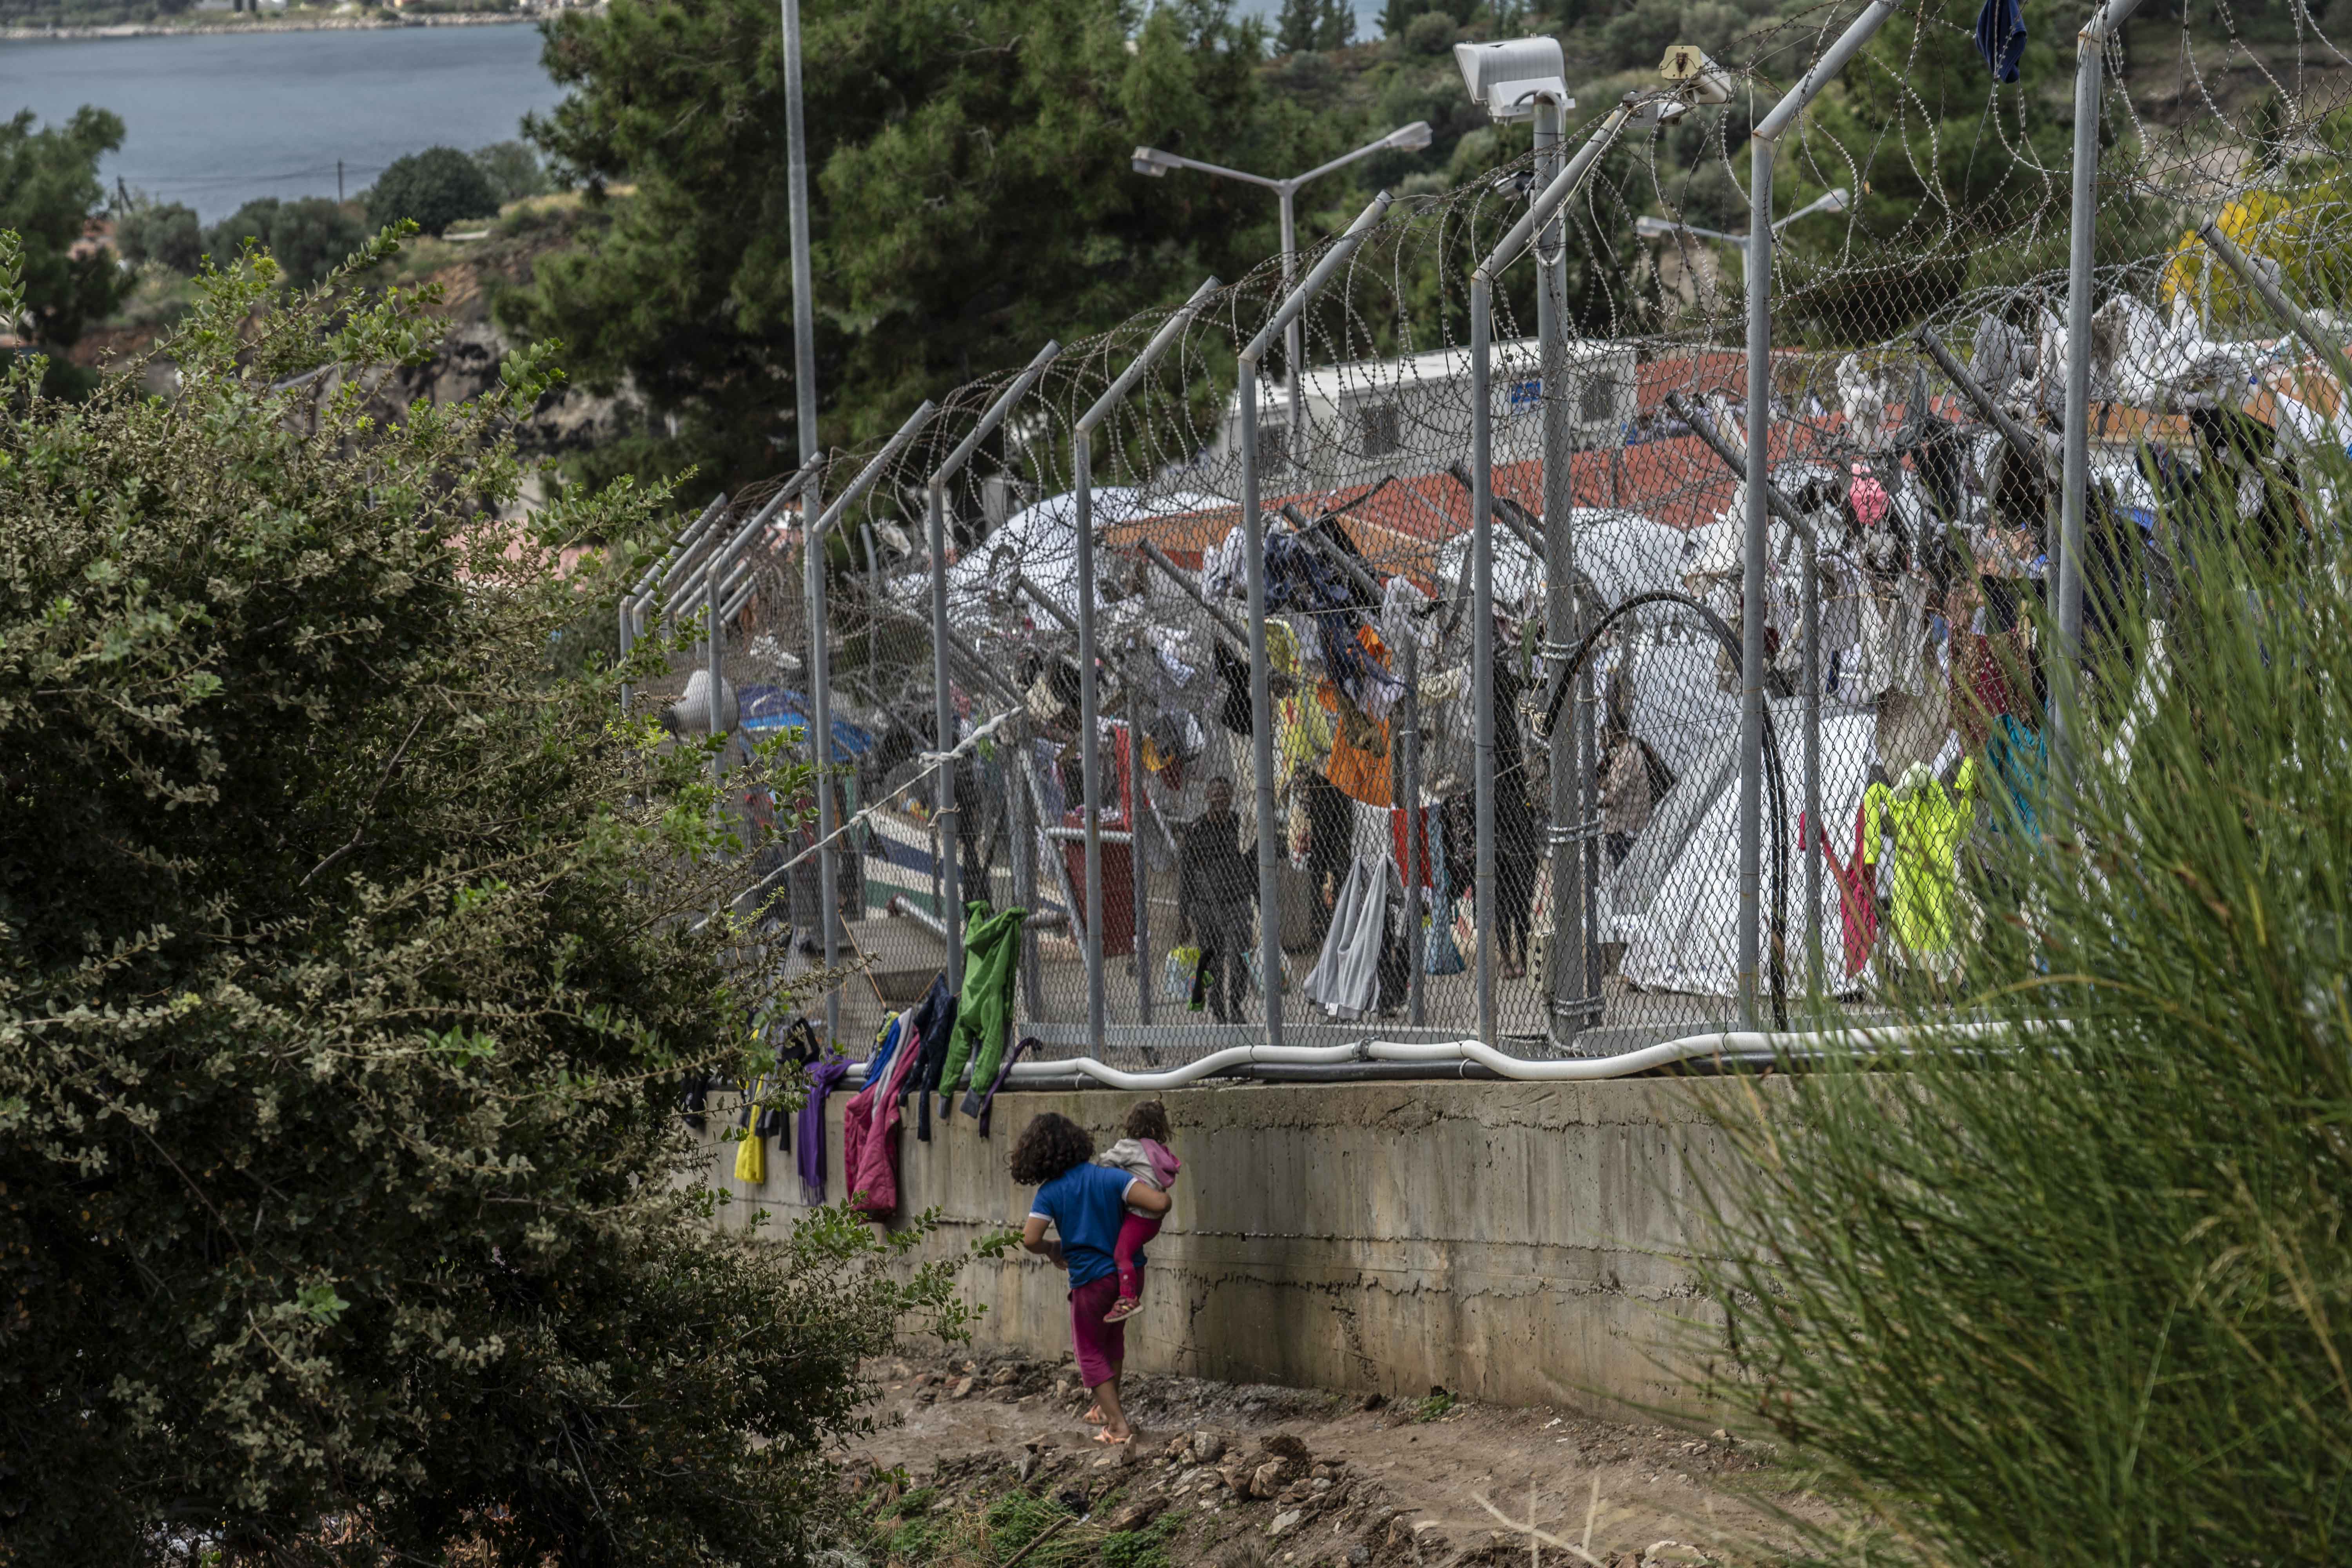 Ontoelaatbare levenscondities achter een gesloten hekken. Ook voor deze kinderen in het kamp Vathy op het Griekse eiland Samos is dat nog steeds de trieste realiteit.In november 2019 leefden in het kamp 7.300 mensen. Maar liefst 2.700 daarvan waren kinderen. 